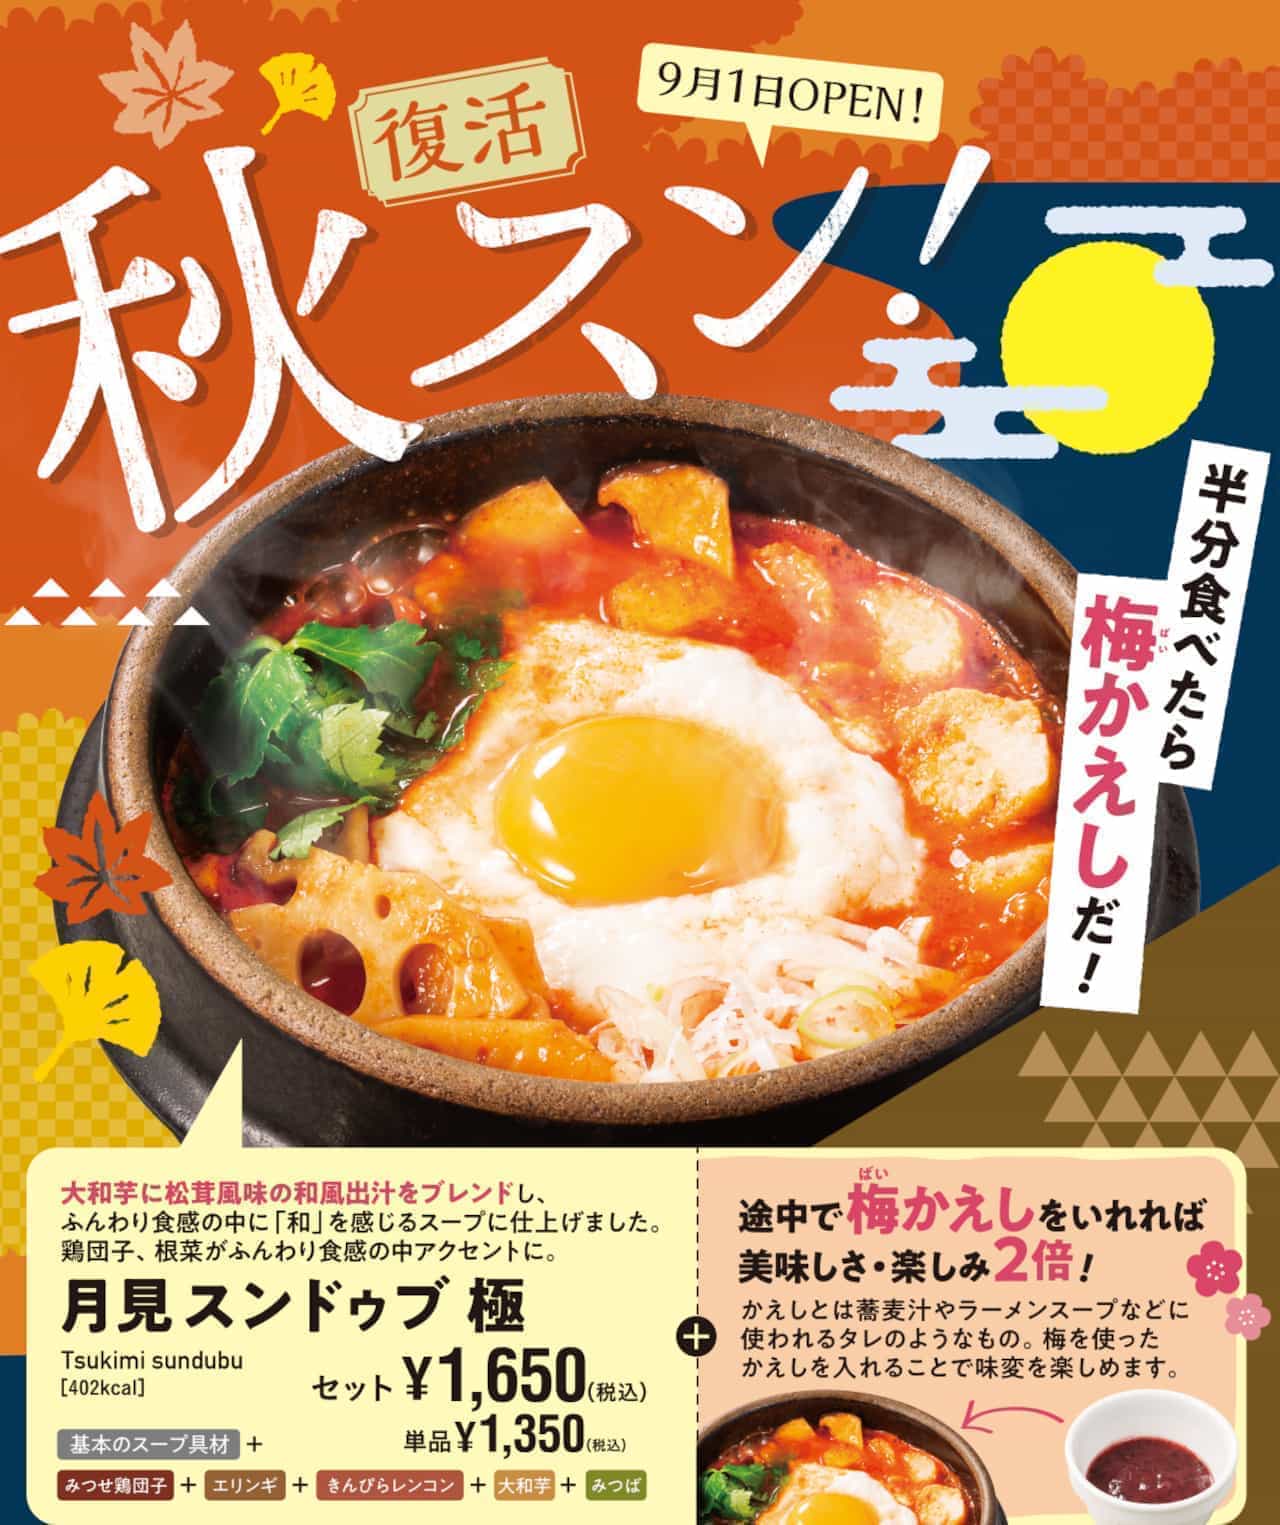 Autumn menu "Tsukimi Sundubu Goku" in Tokyo Sundubu